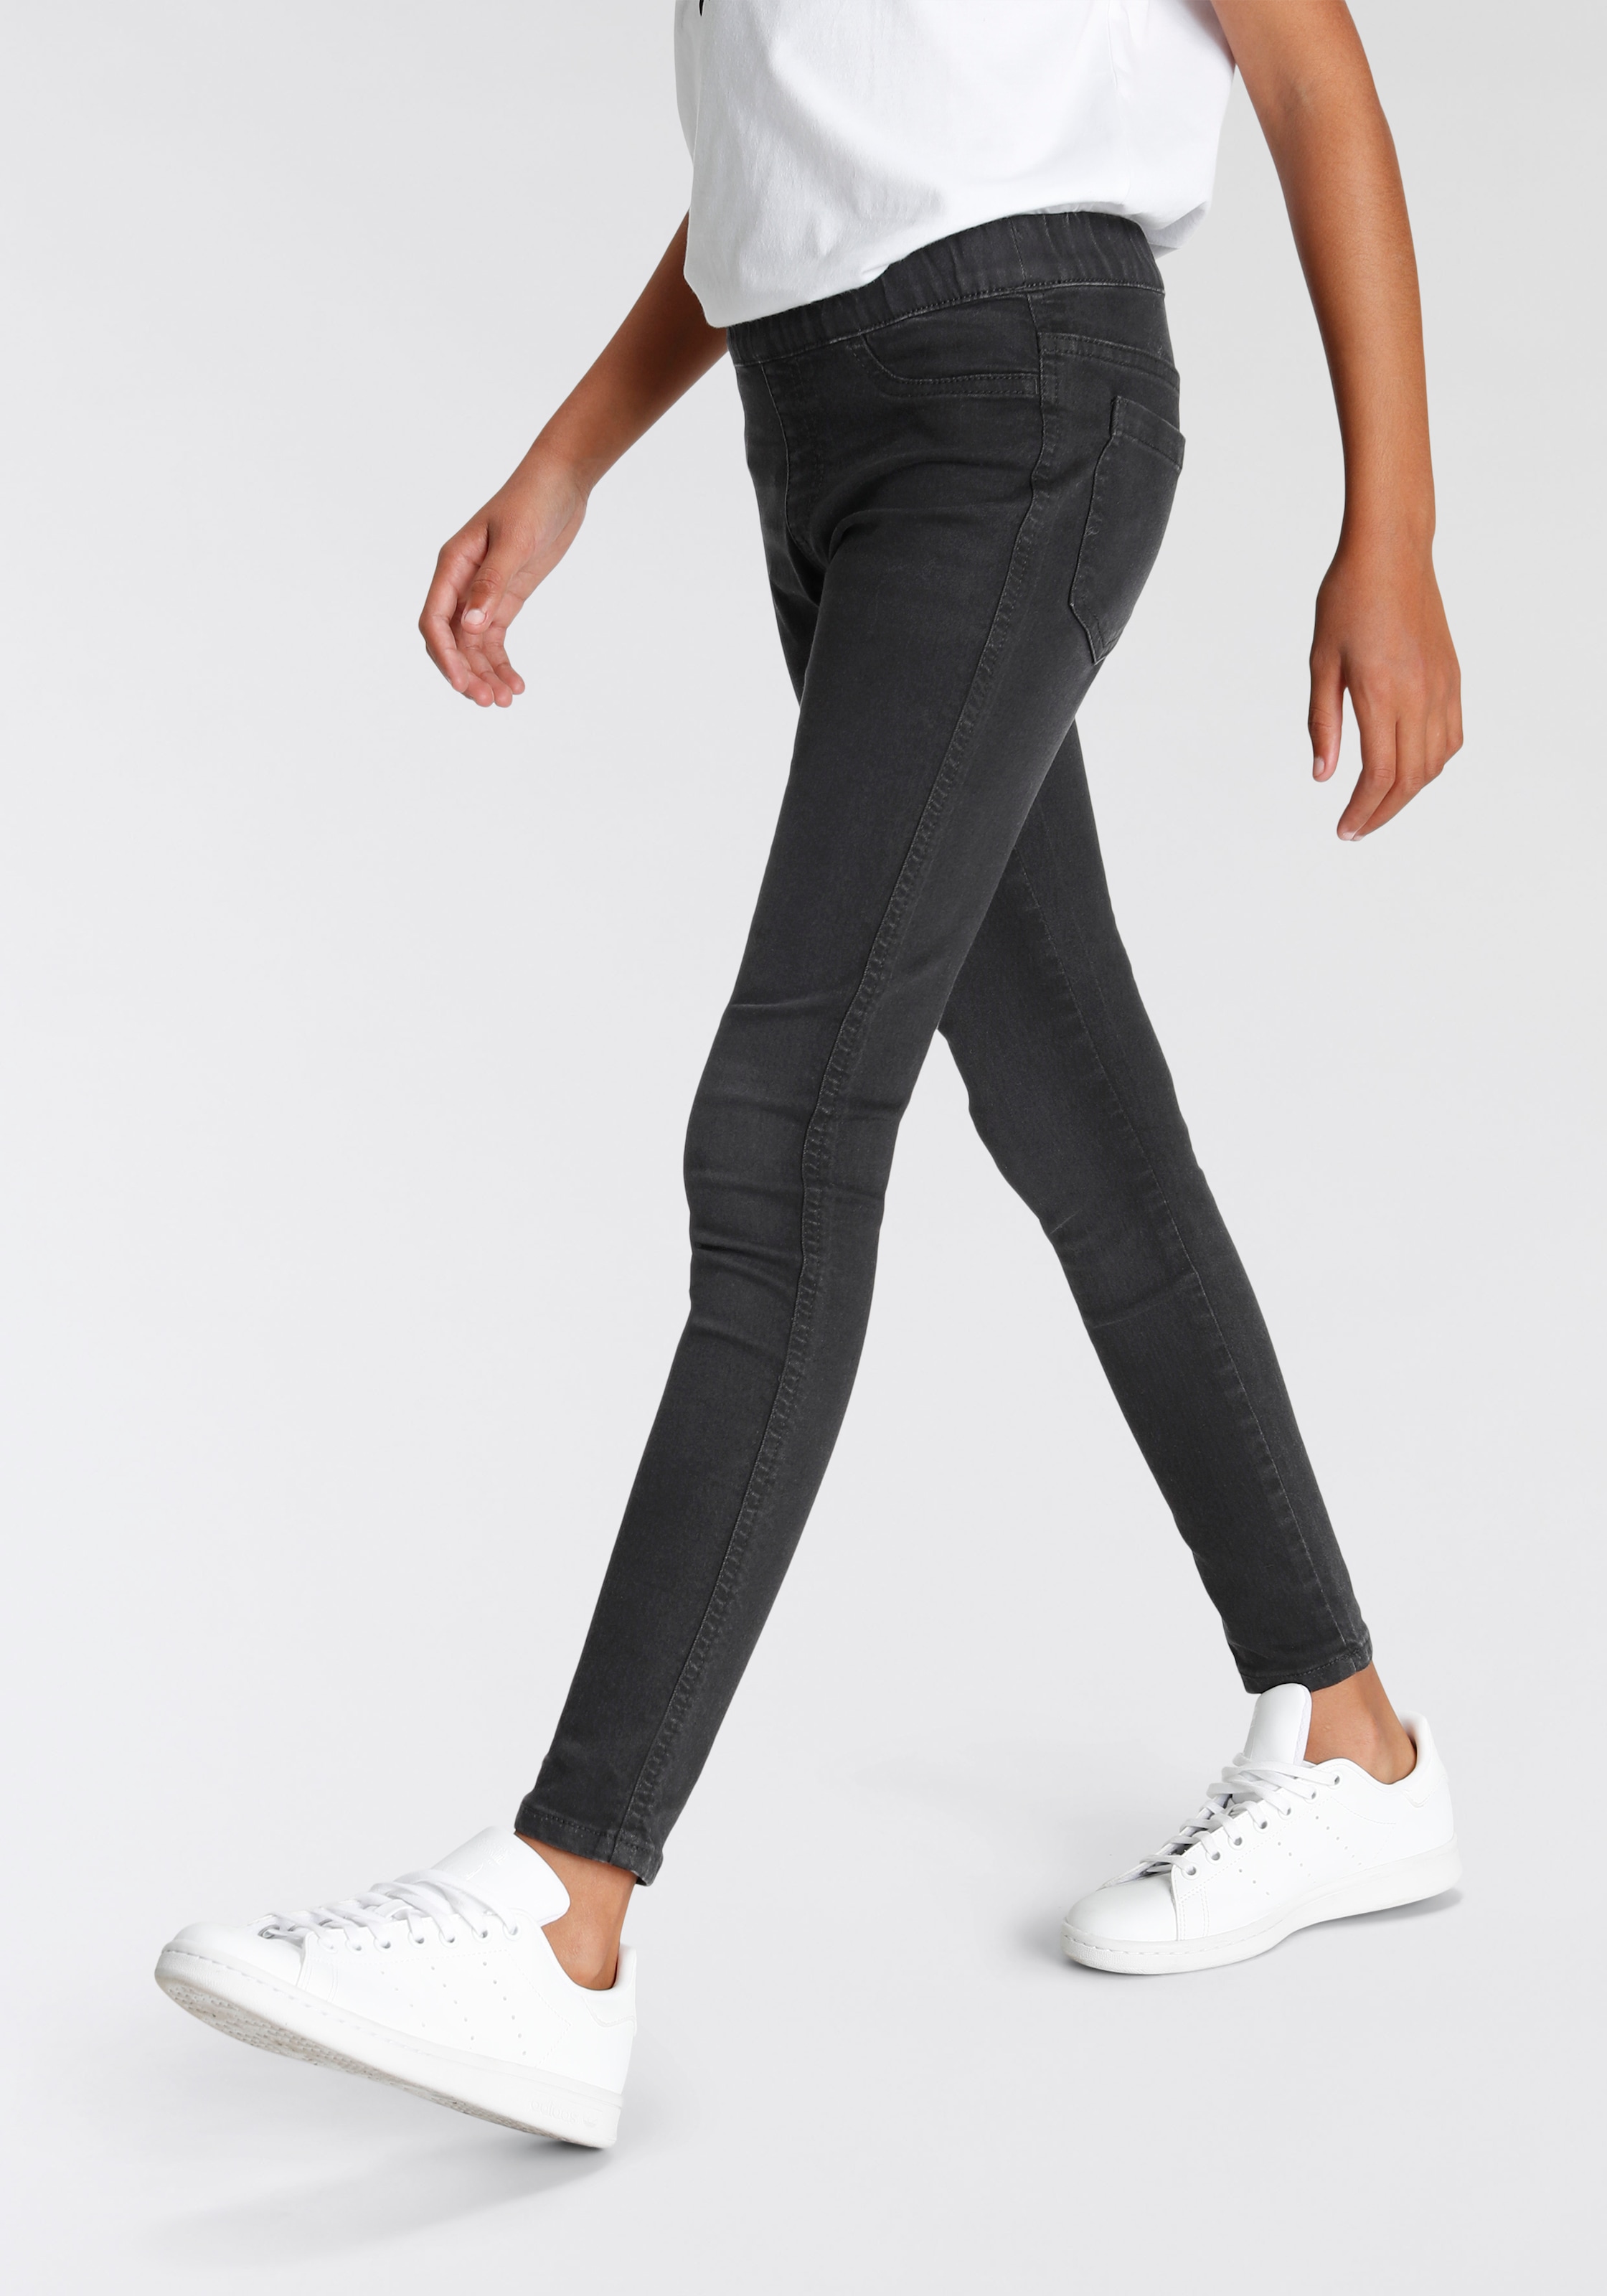 Jeans Mädchen bestellen Mindestbestellwert Trendige ⮫ ohne